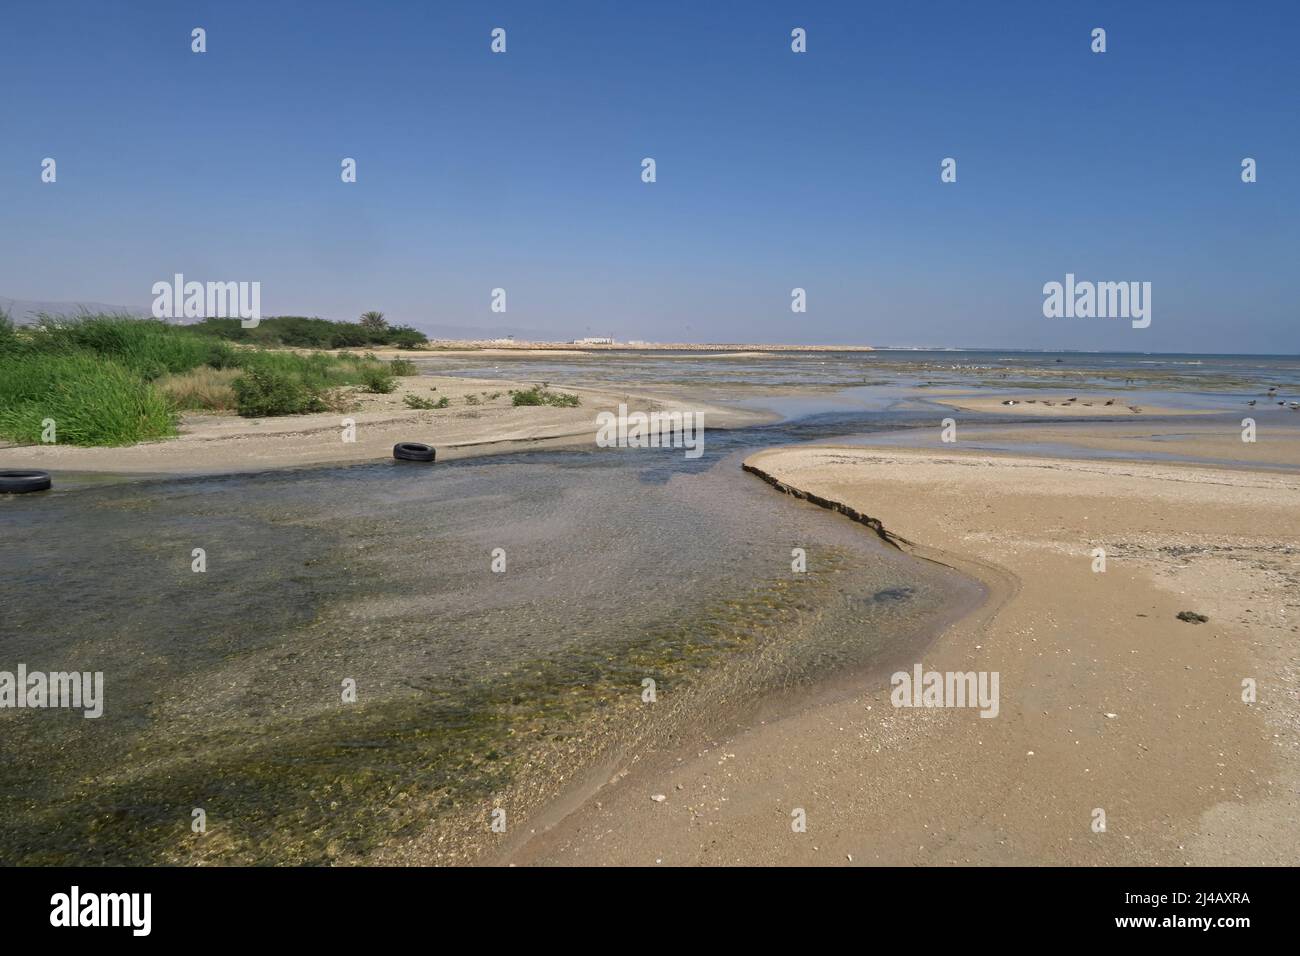 Ruisseau entrant dans la mer d'Arabie au-dessus de la plage sud d'Oman Décembre Banque D'Images